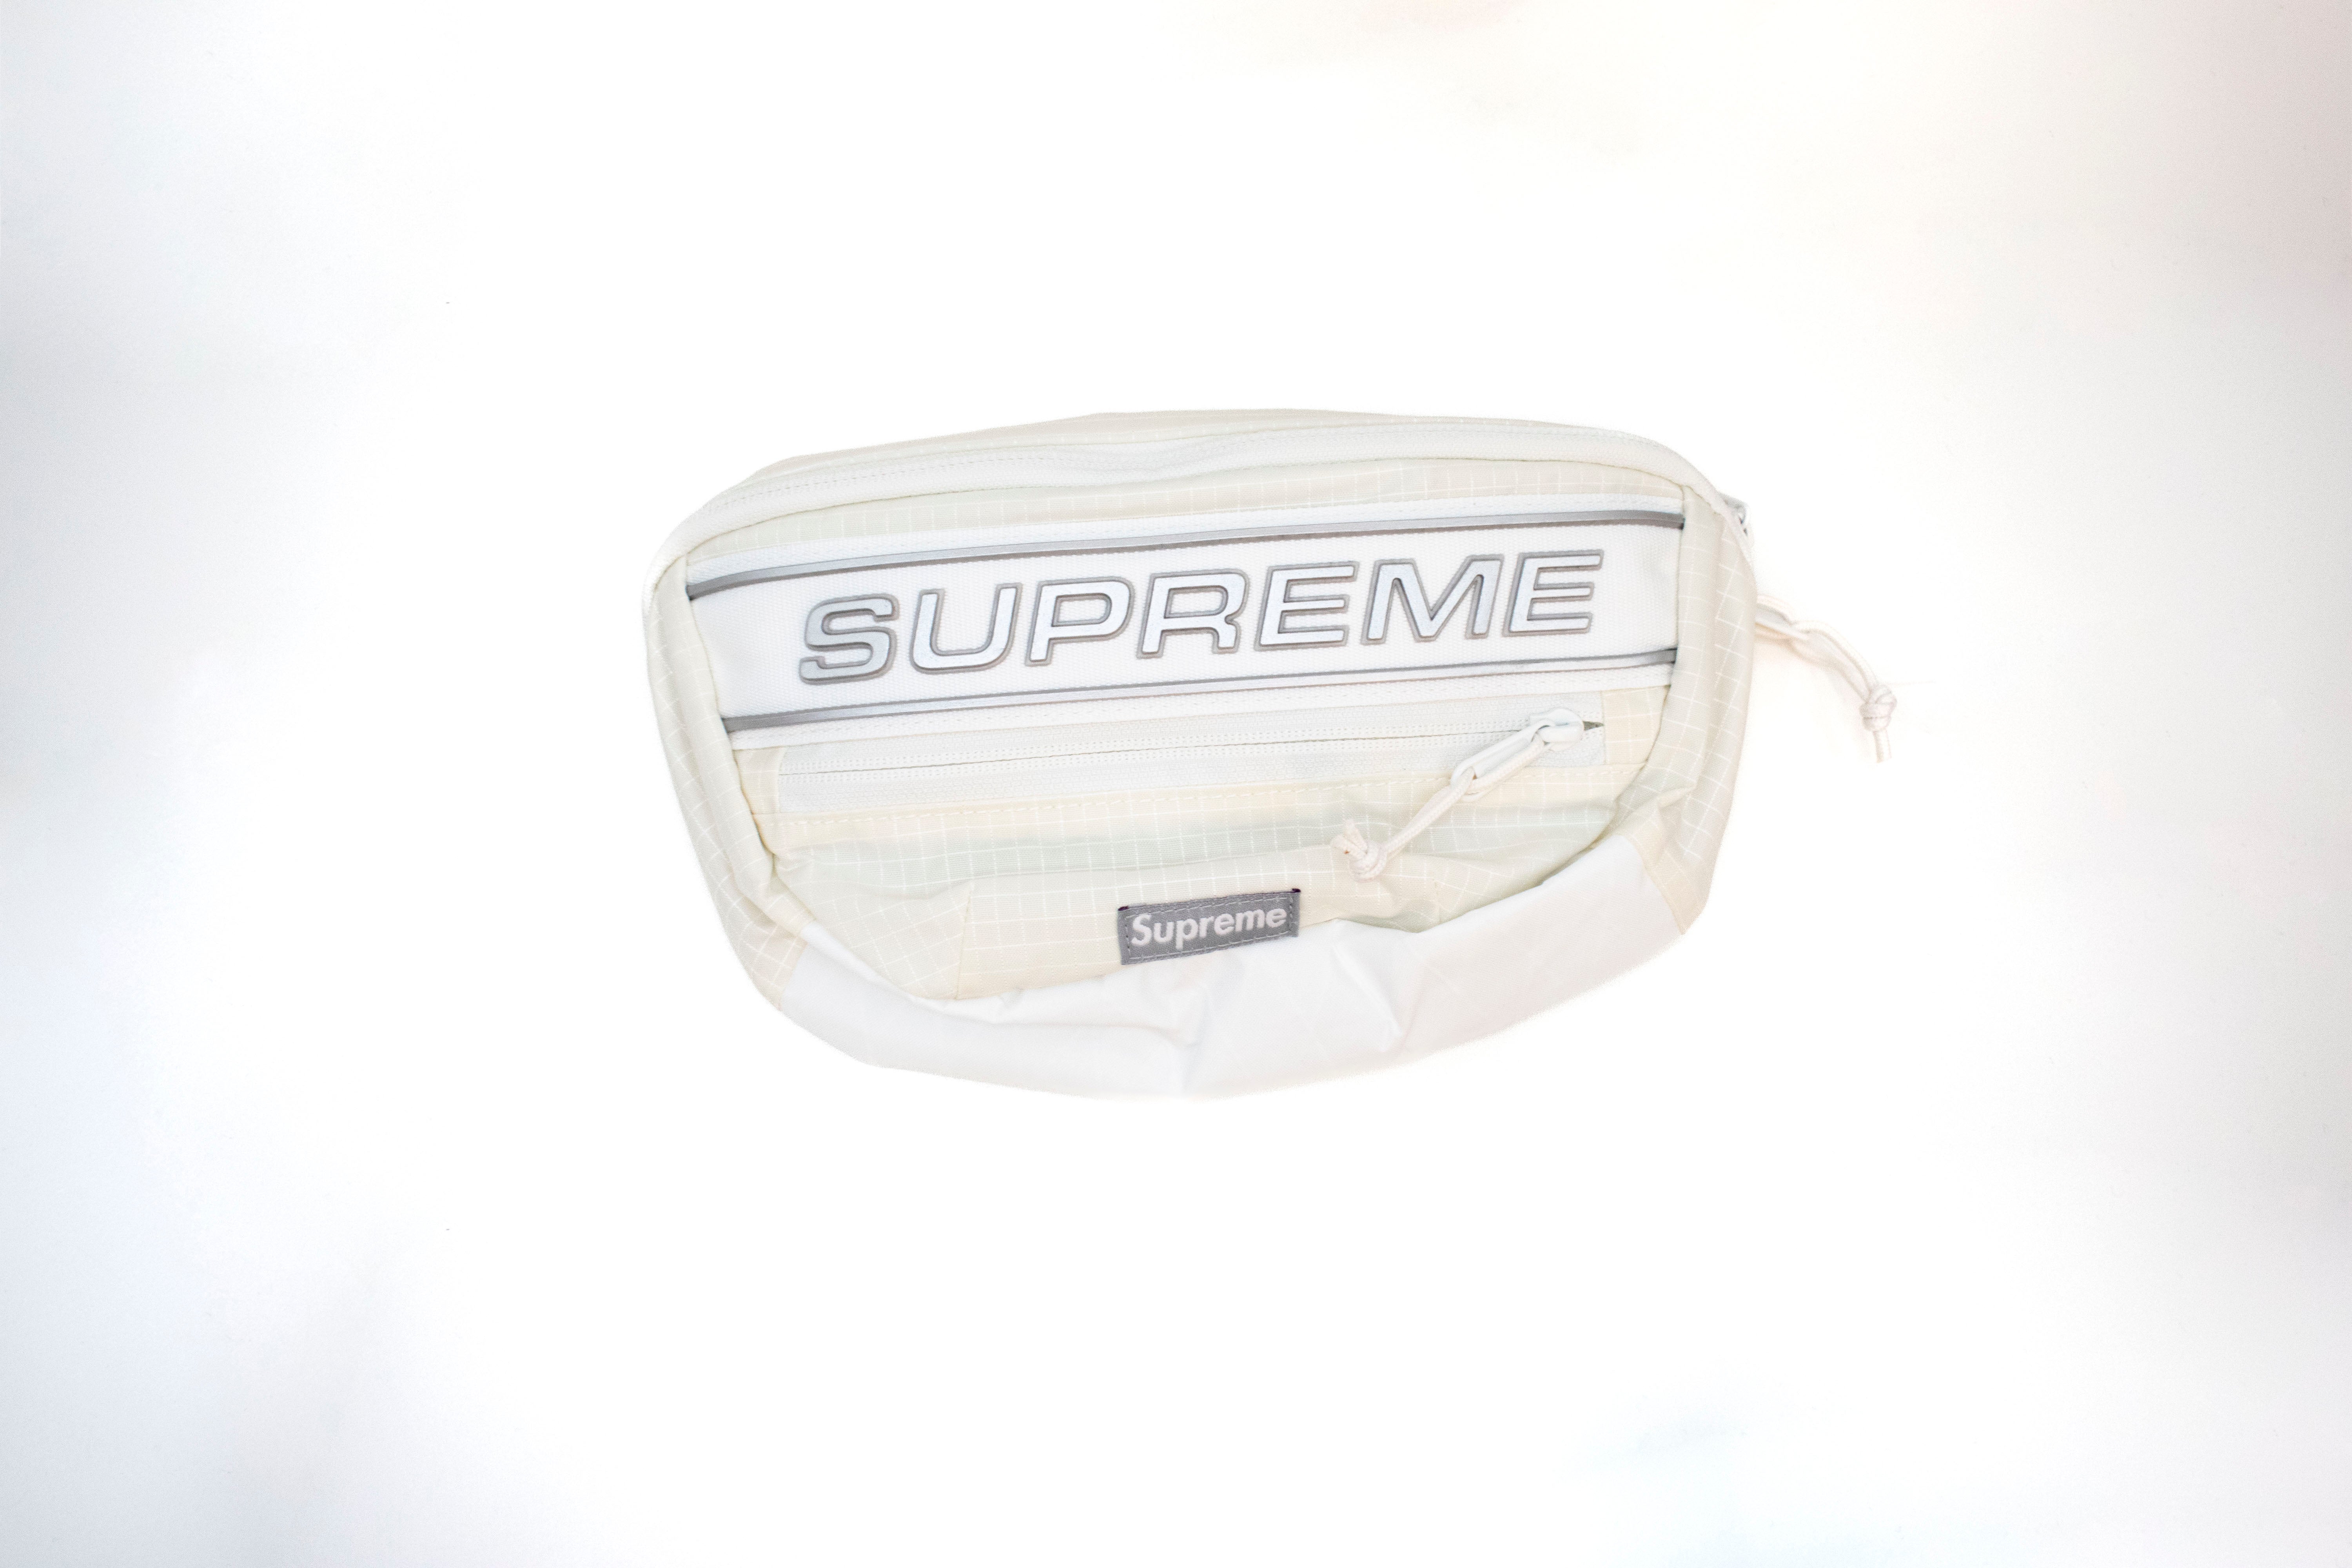 Supreme Waist Bag White